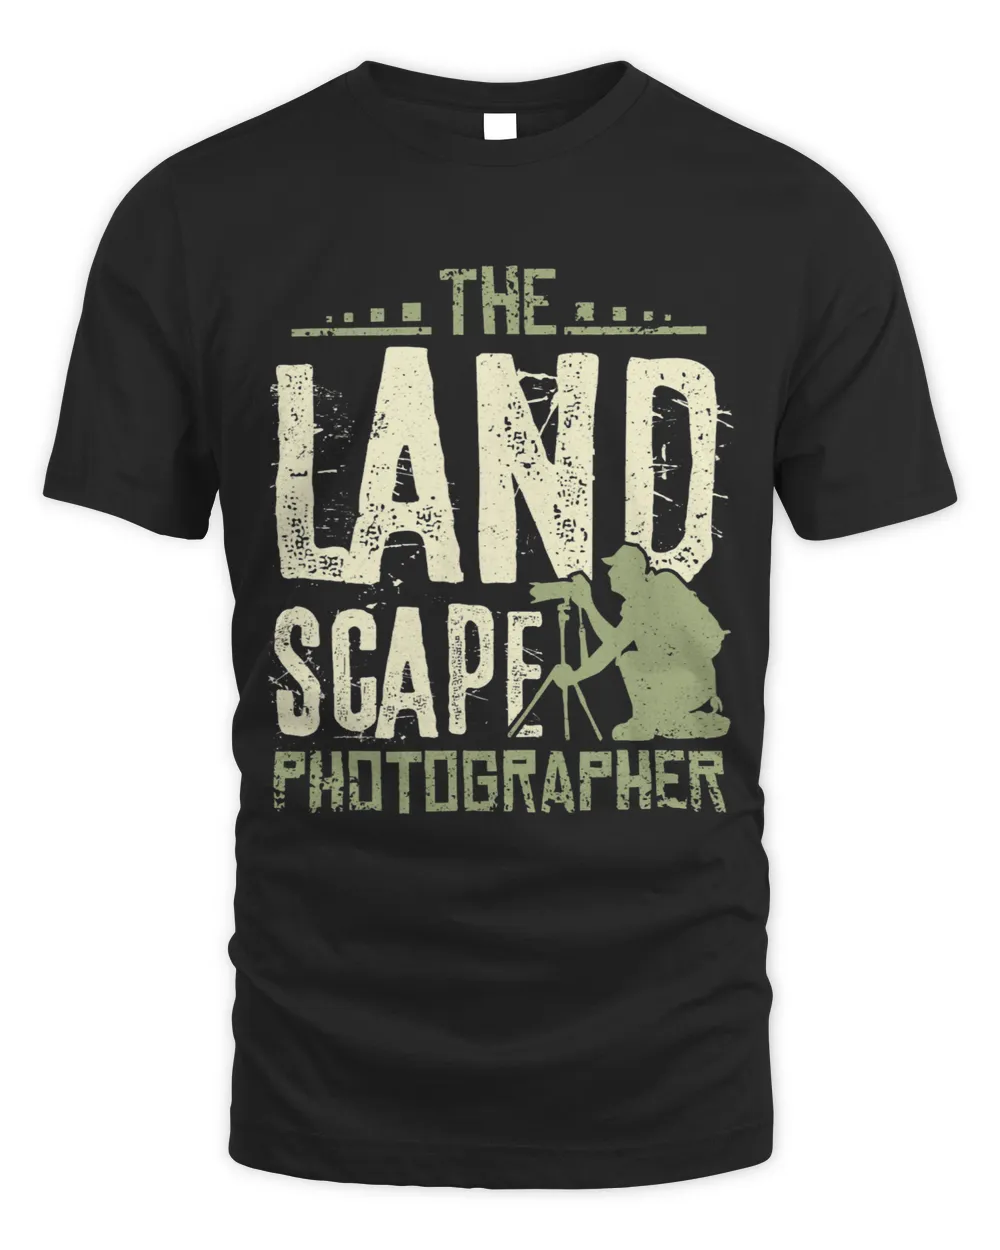 The landscape photographer